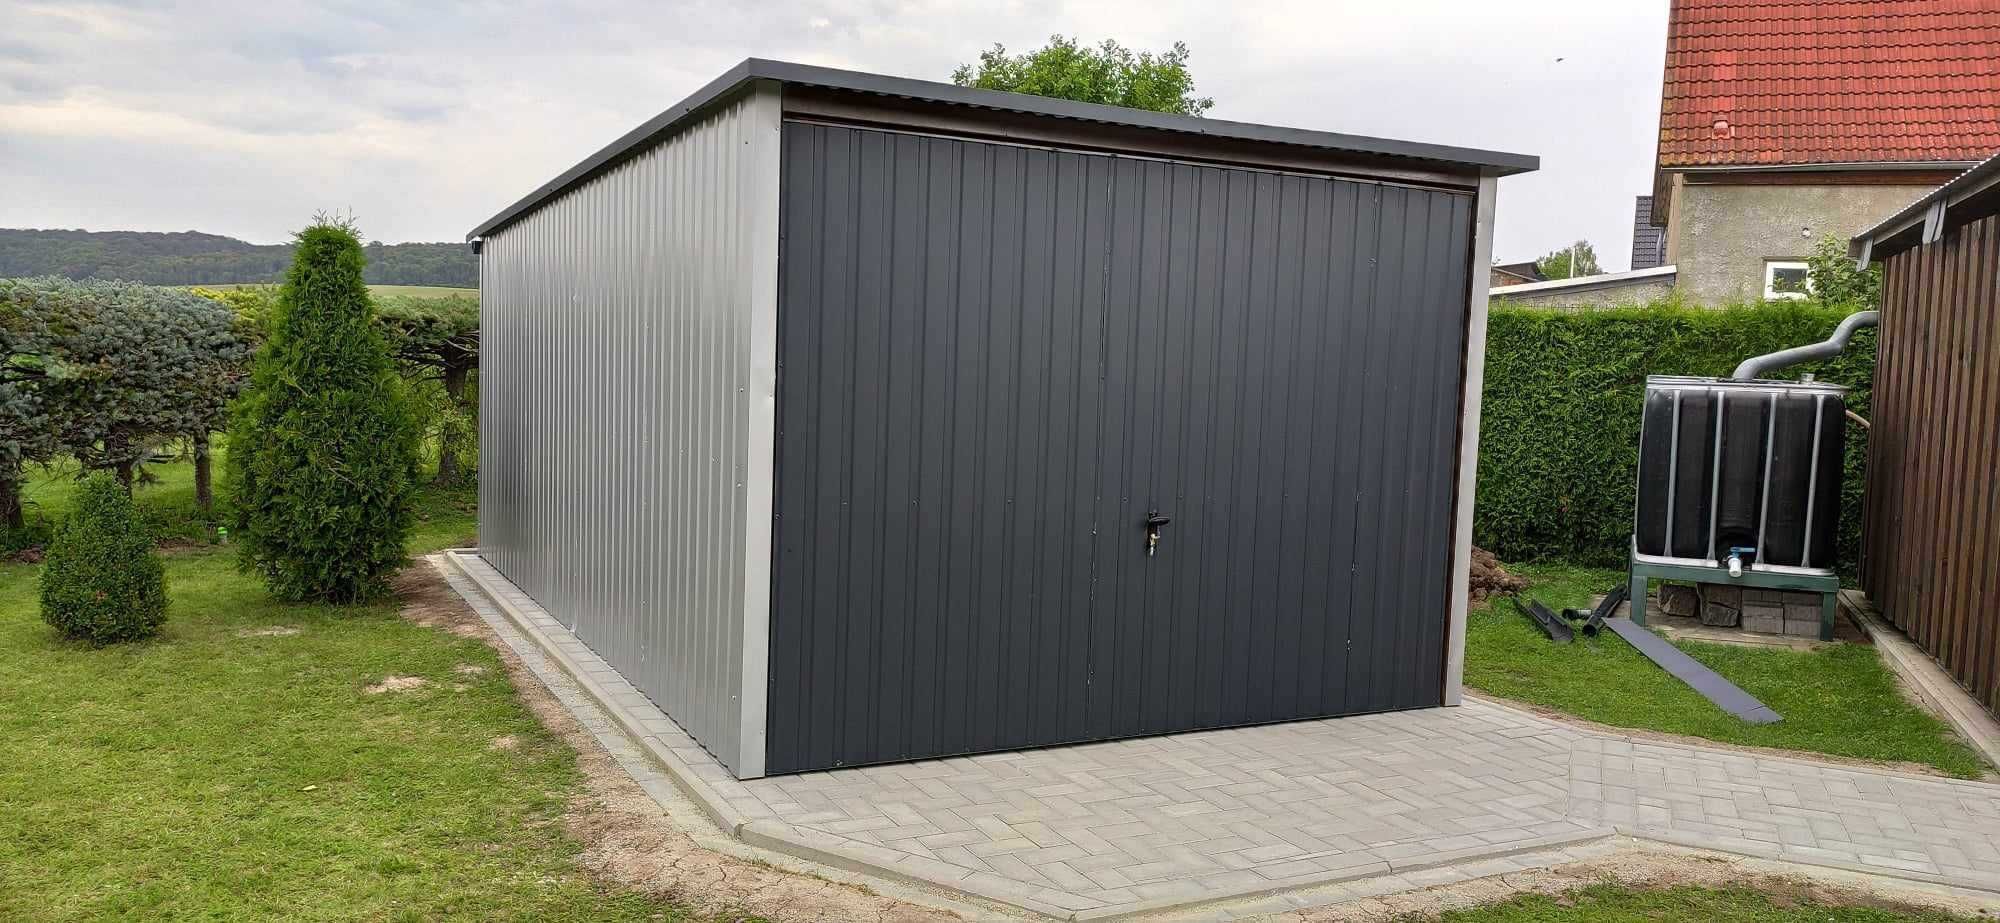 Garaż blaszany 3x5 ( konstrukcja ocynk, transport i montaż gratis)